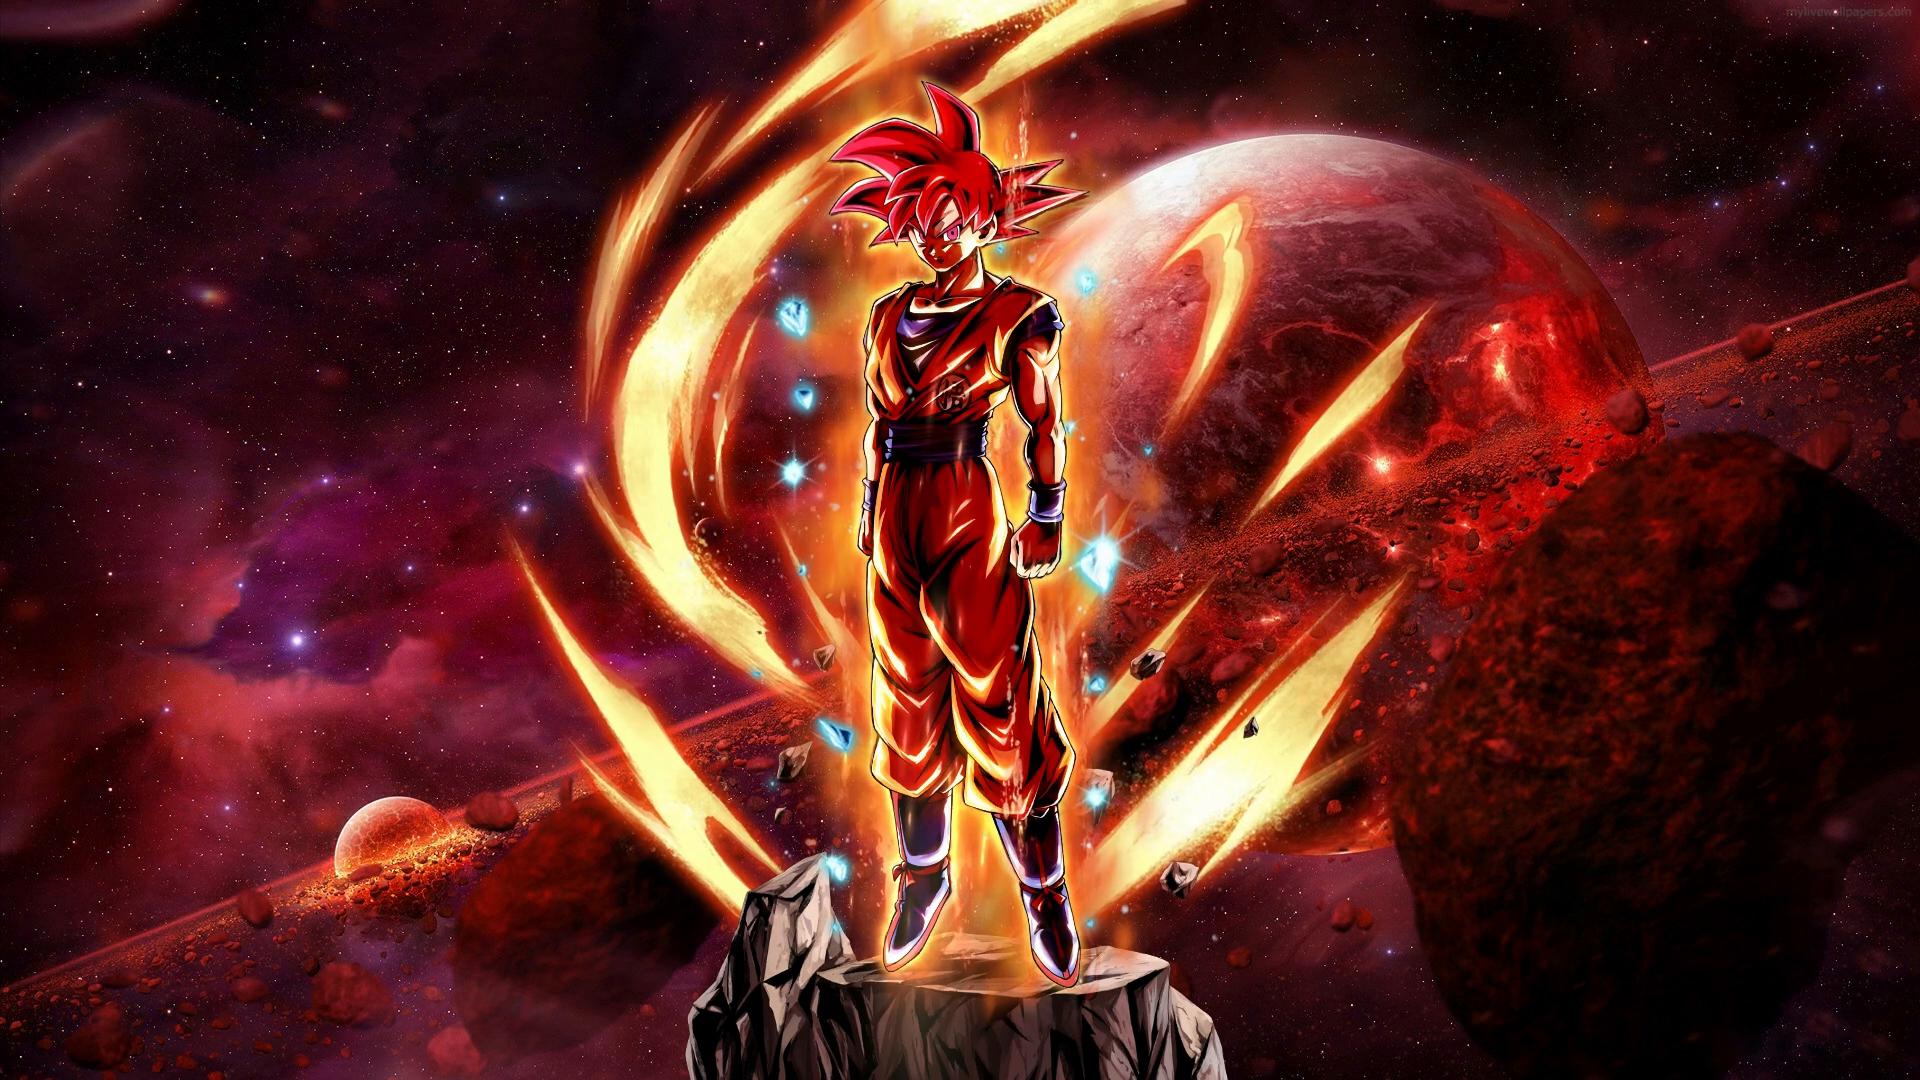 Download Vegeta Unleashing His Power as Super Saiyan 2 Wallpaper